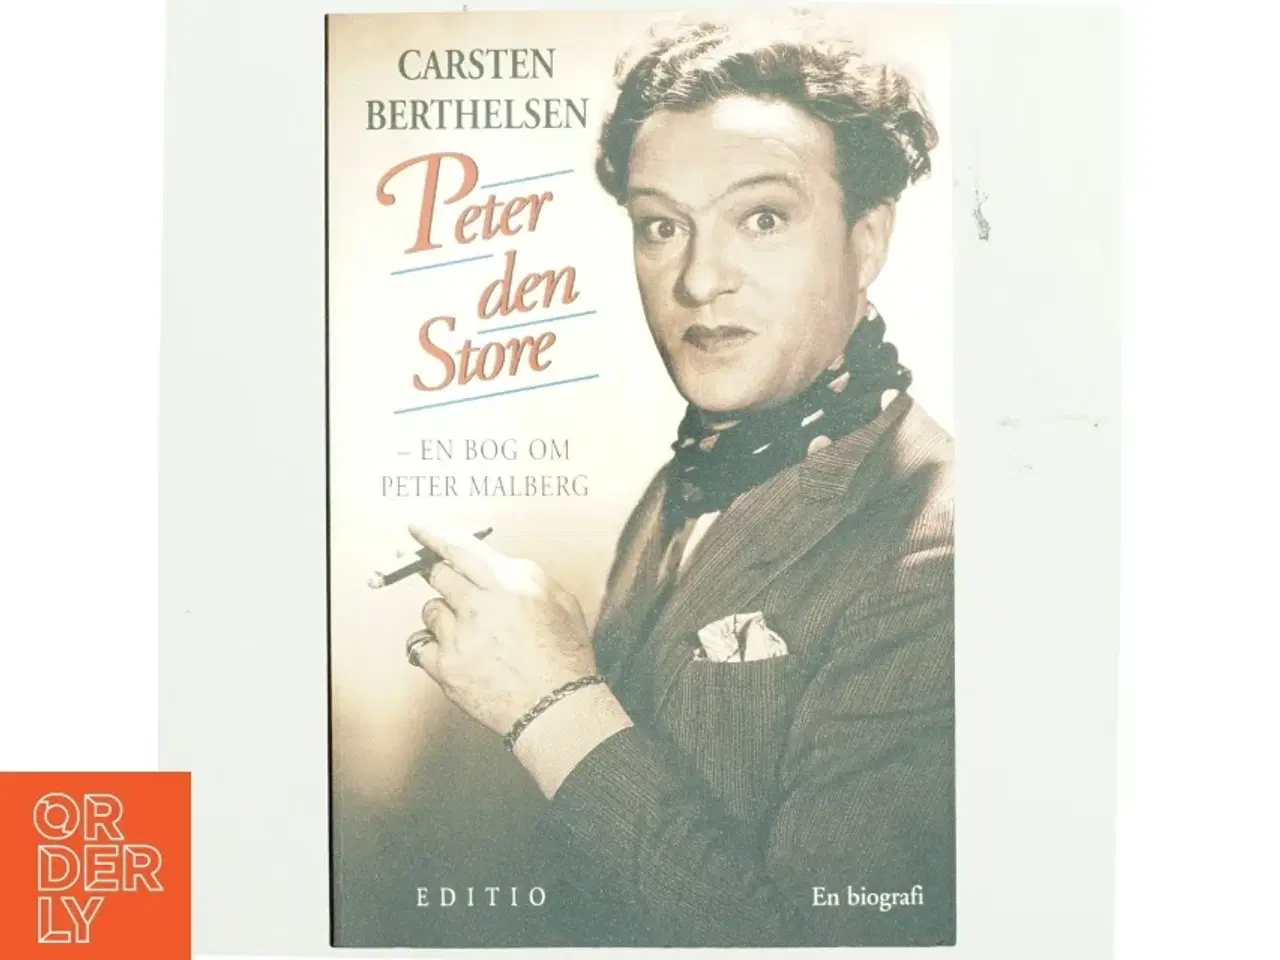 Billede 1 - Peter den Store : en bog om Peter Malberg af Carsten Berthelsen (f. 1951) (Bog)